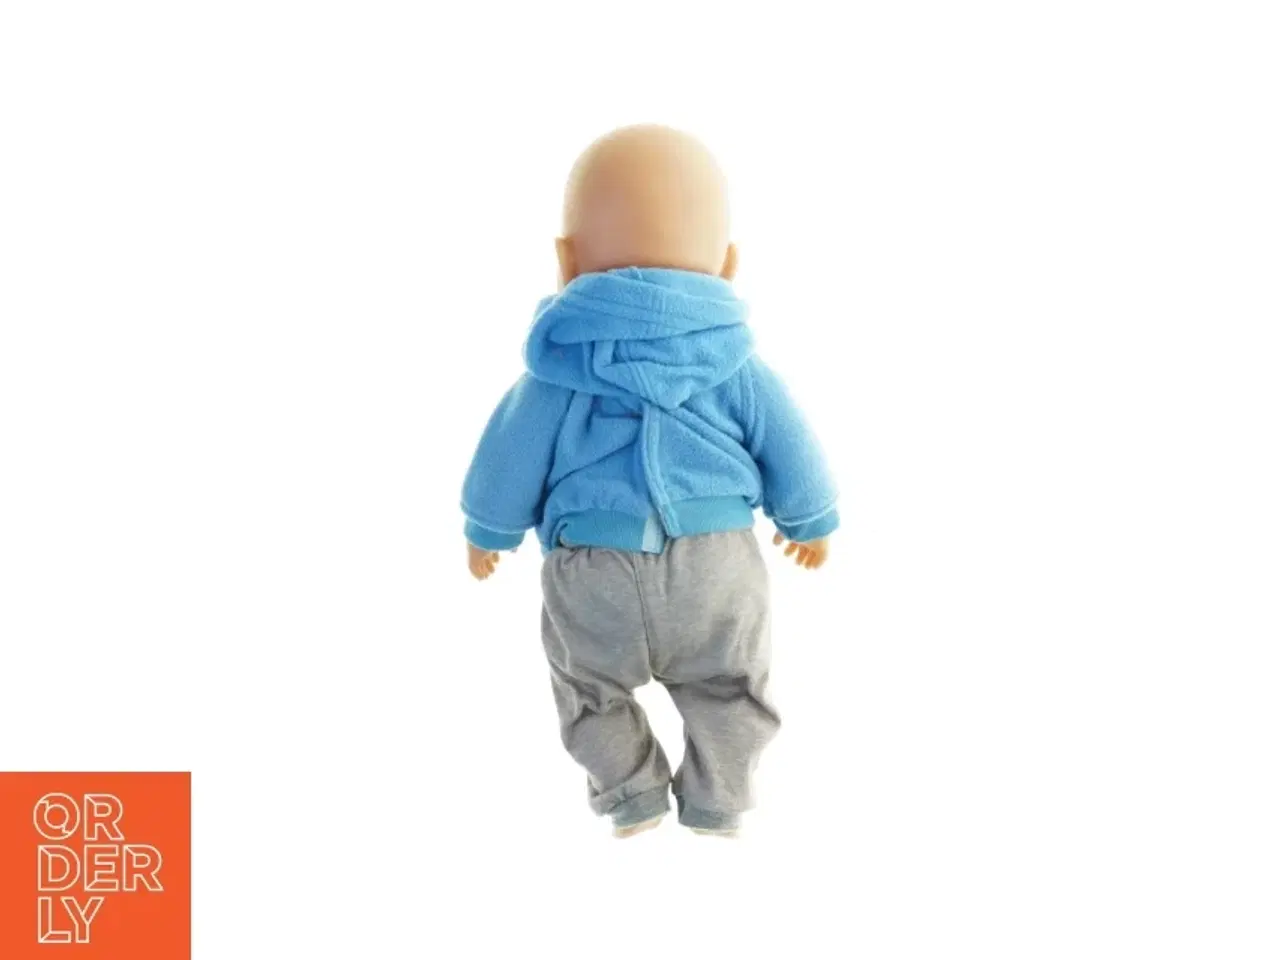 Billede 3 - Baby dukke med tøj og bæresele (str. 45 x 26 cm)